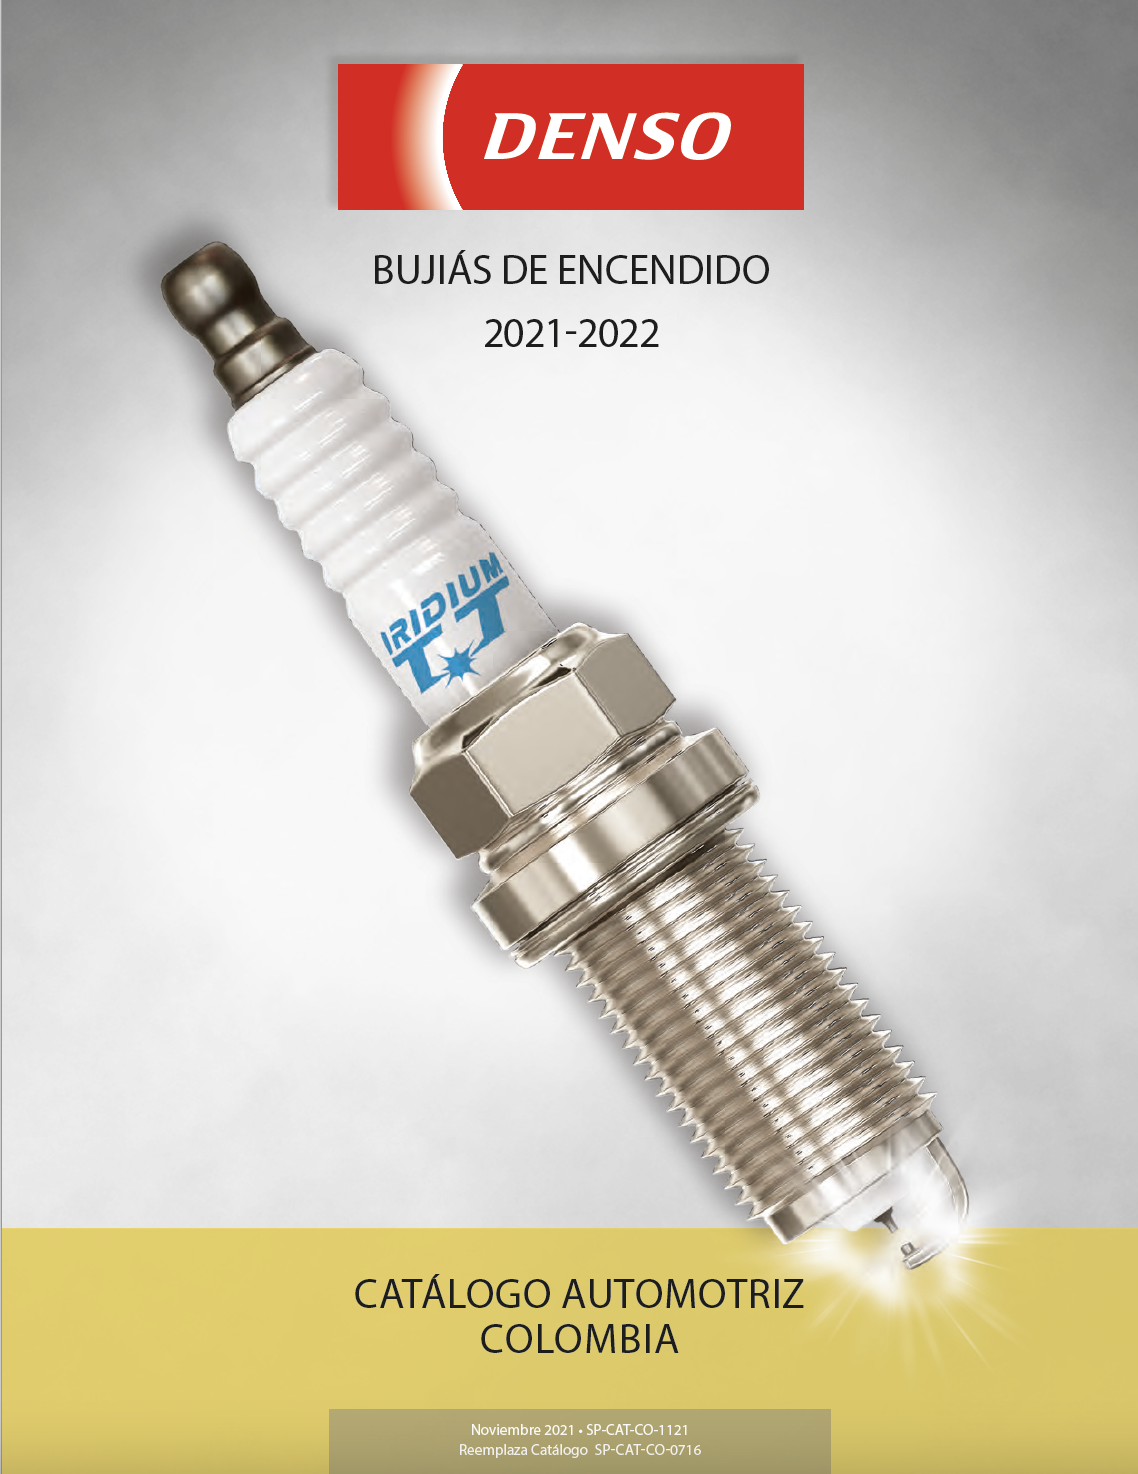 Catálogo de Bujías DENSO Colombia 2021-2022